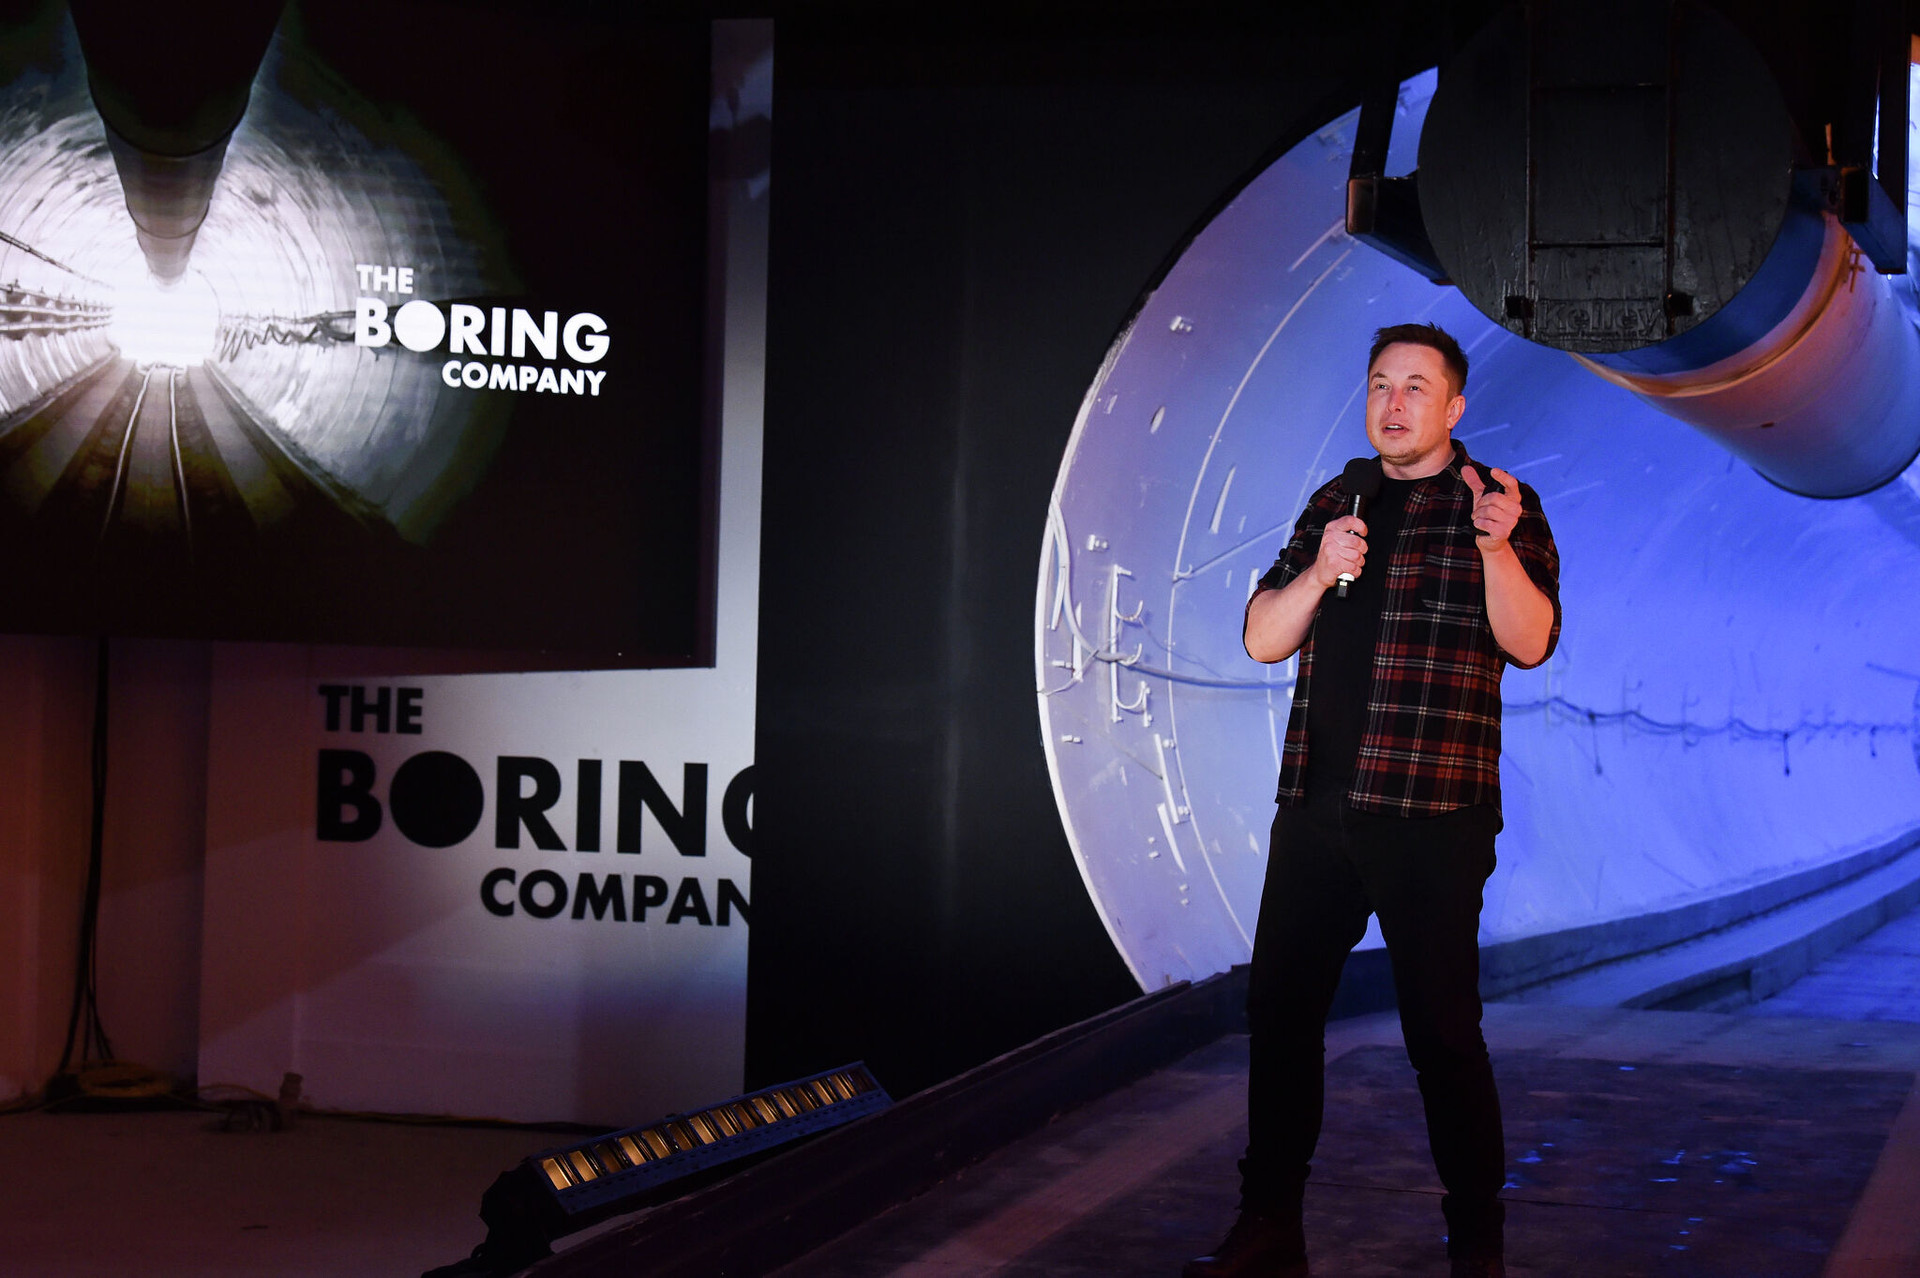 Boring: Startup chuyên đi bán ‘giấc mơ’ của Elon Musk bị chỉ trích vì chuyên 'hủy kèo', vẽ đủ dự án hoành tráng rồi bó xó - Ảnh 1.